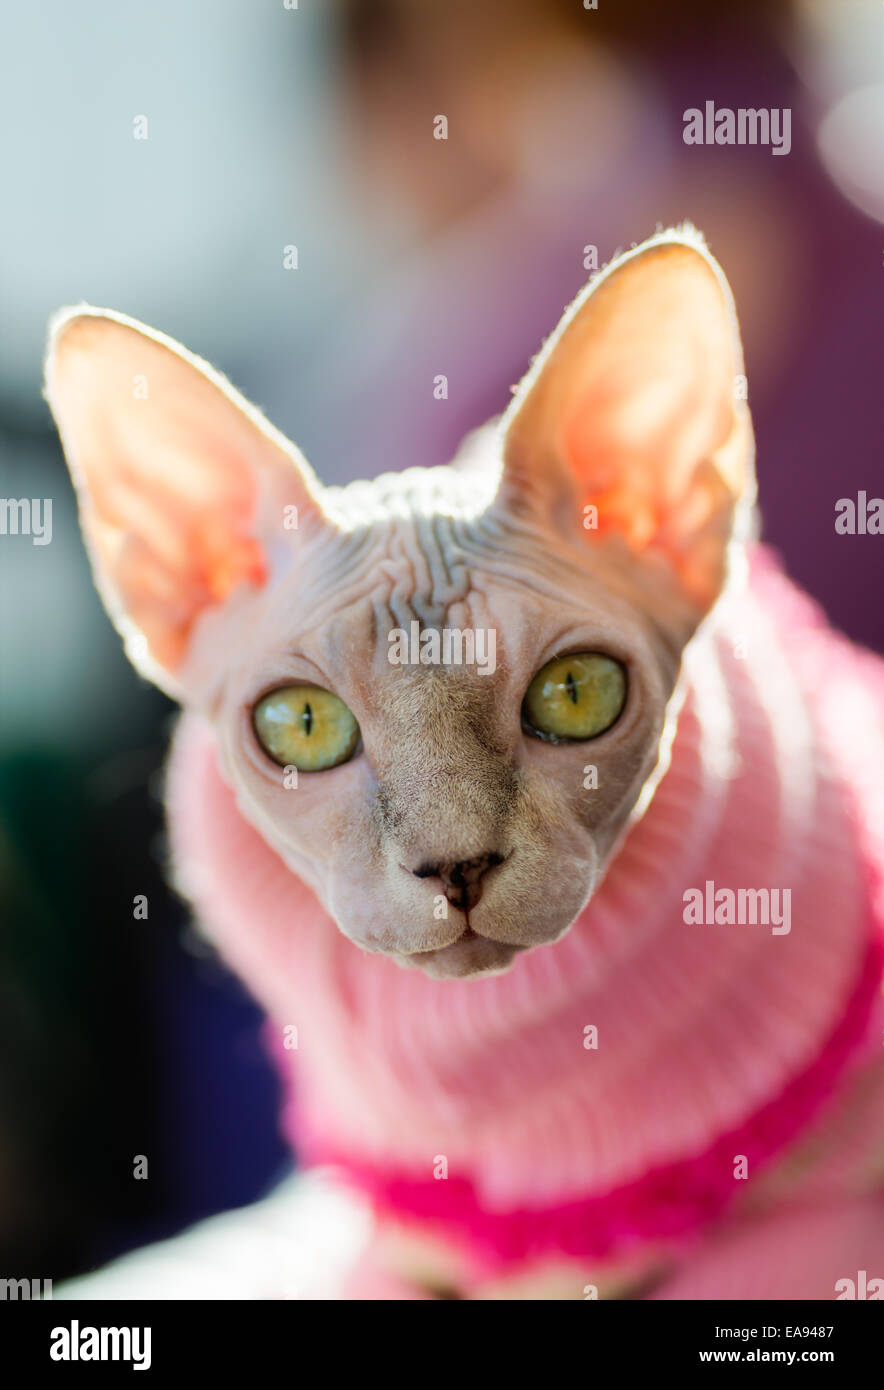 Animali: Sphynx gatto rosa da indossare pullover, sole che splende attraverso le orecchie, close-up shot, sfondo sfocato Foto Stock